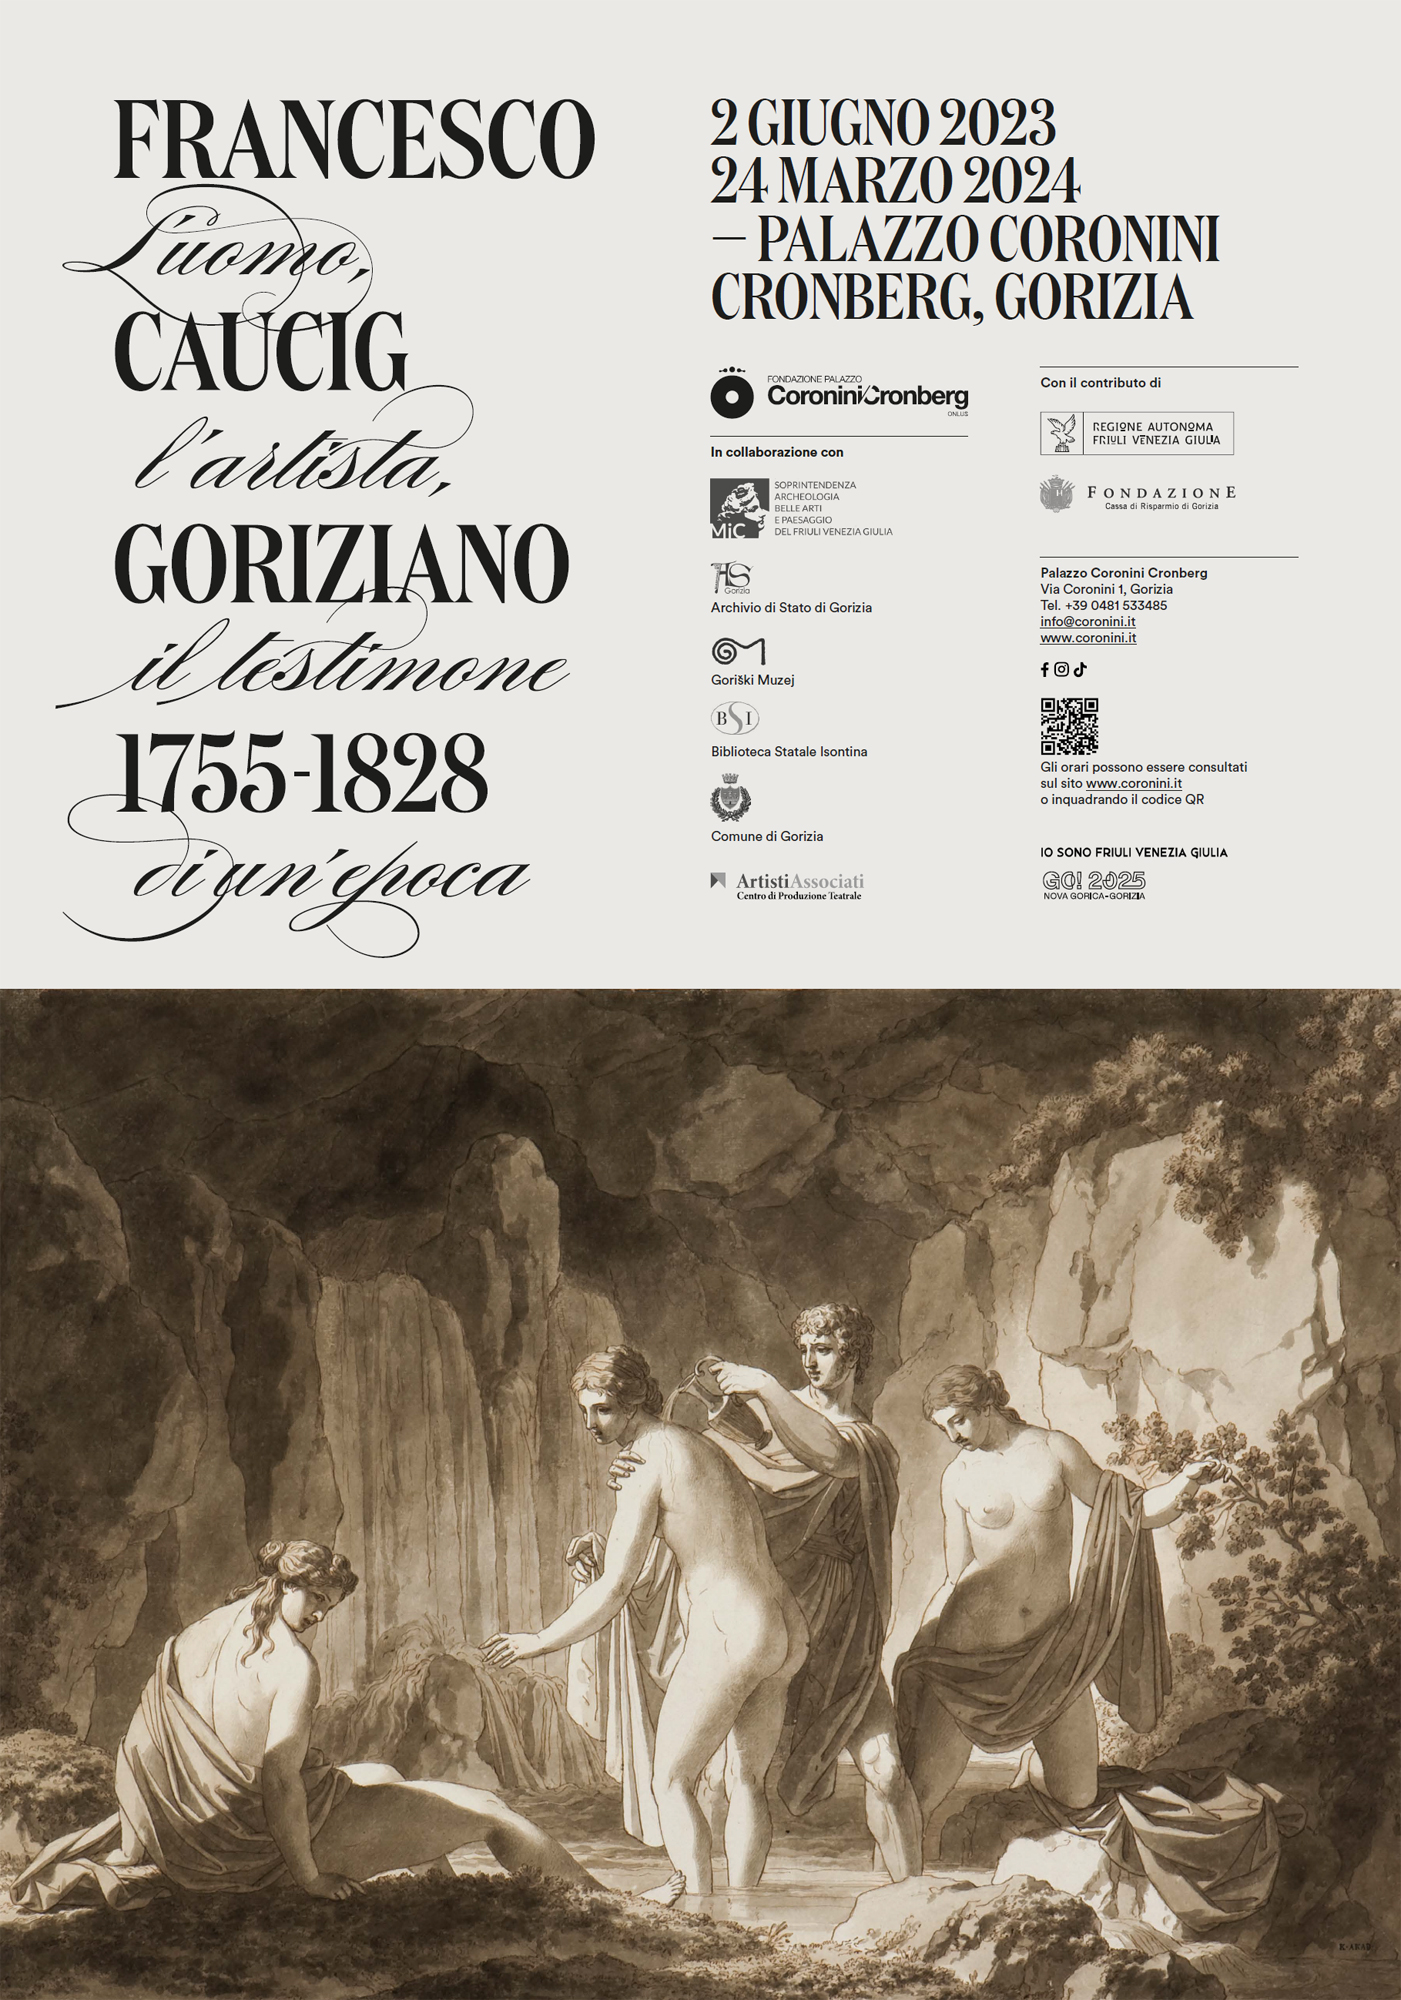 francesco-caucig-goriziano-1755-1828